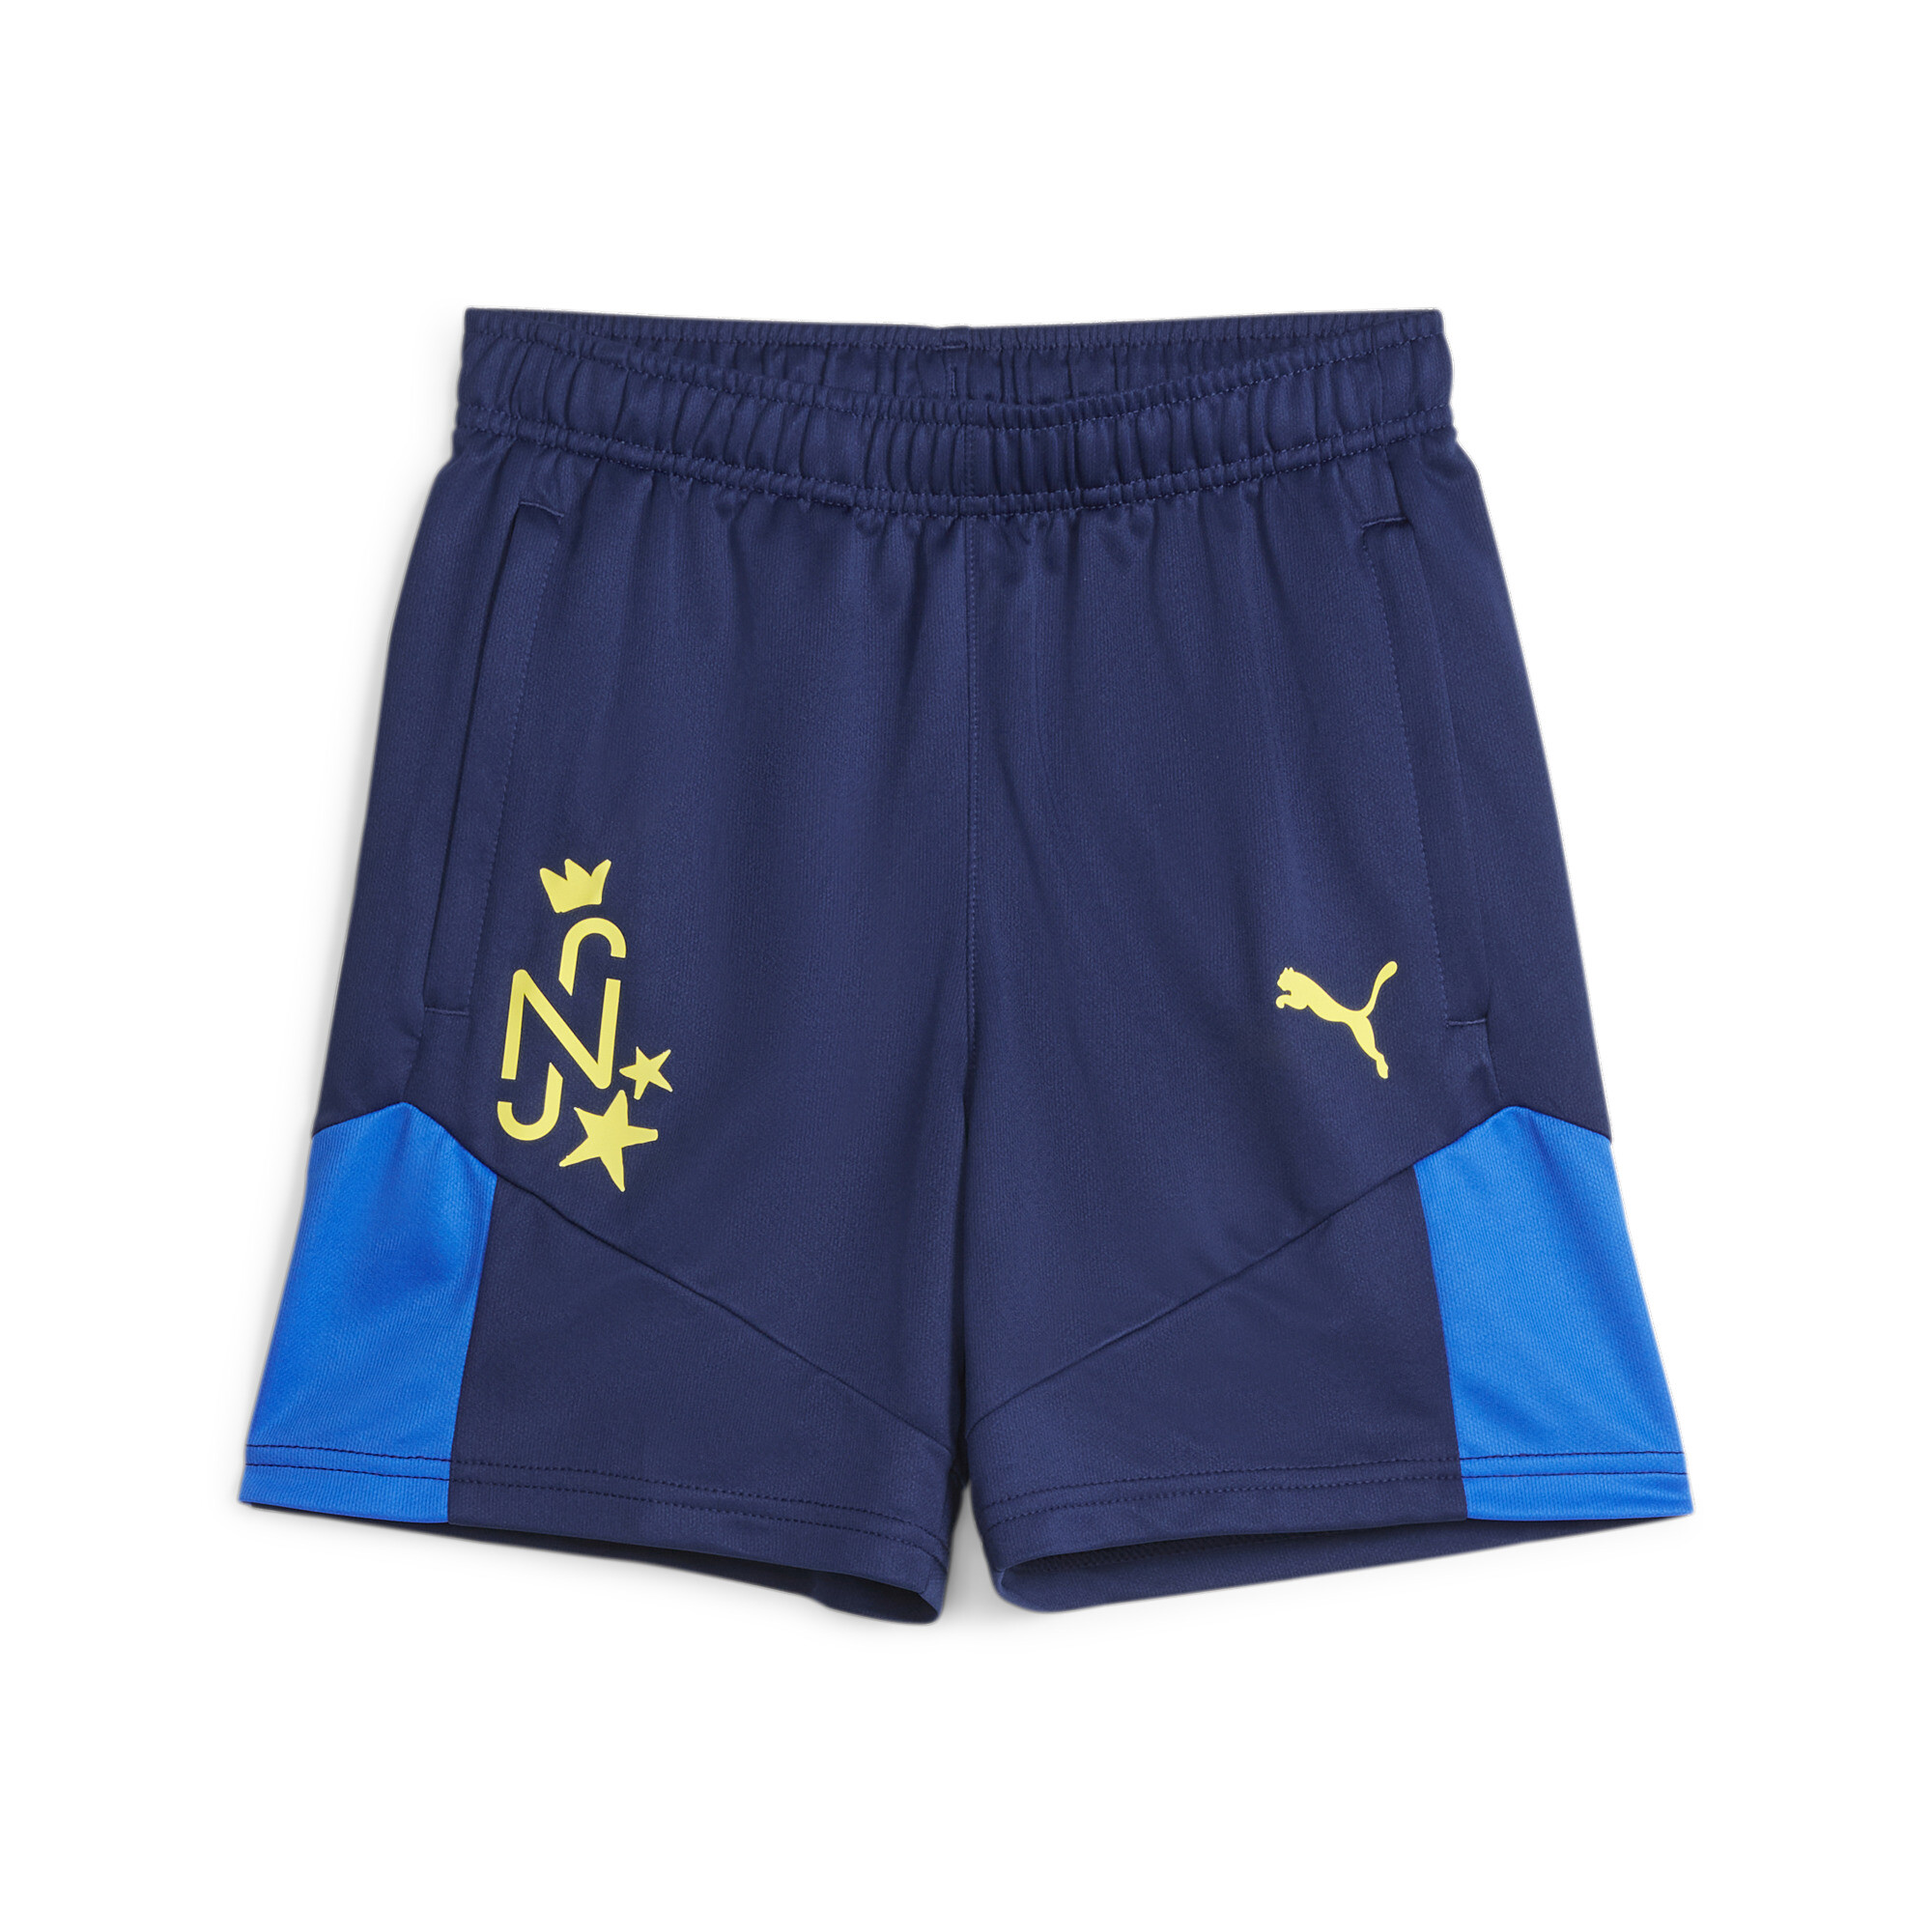 PUMA Neymar Jr Football Shorts In Blue, Size 13-14 Youth